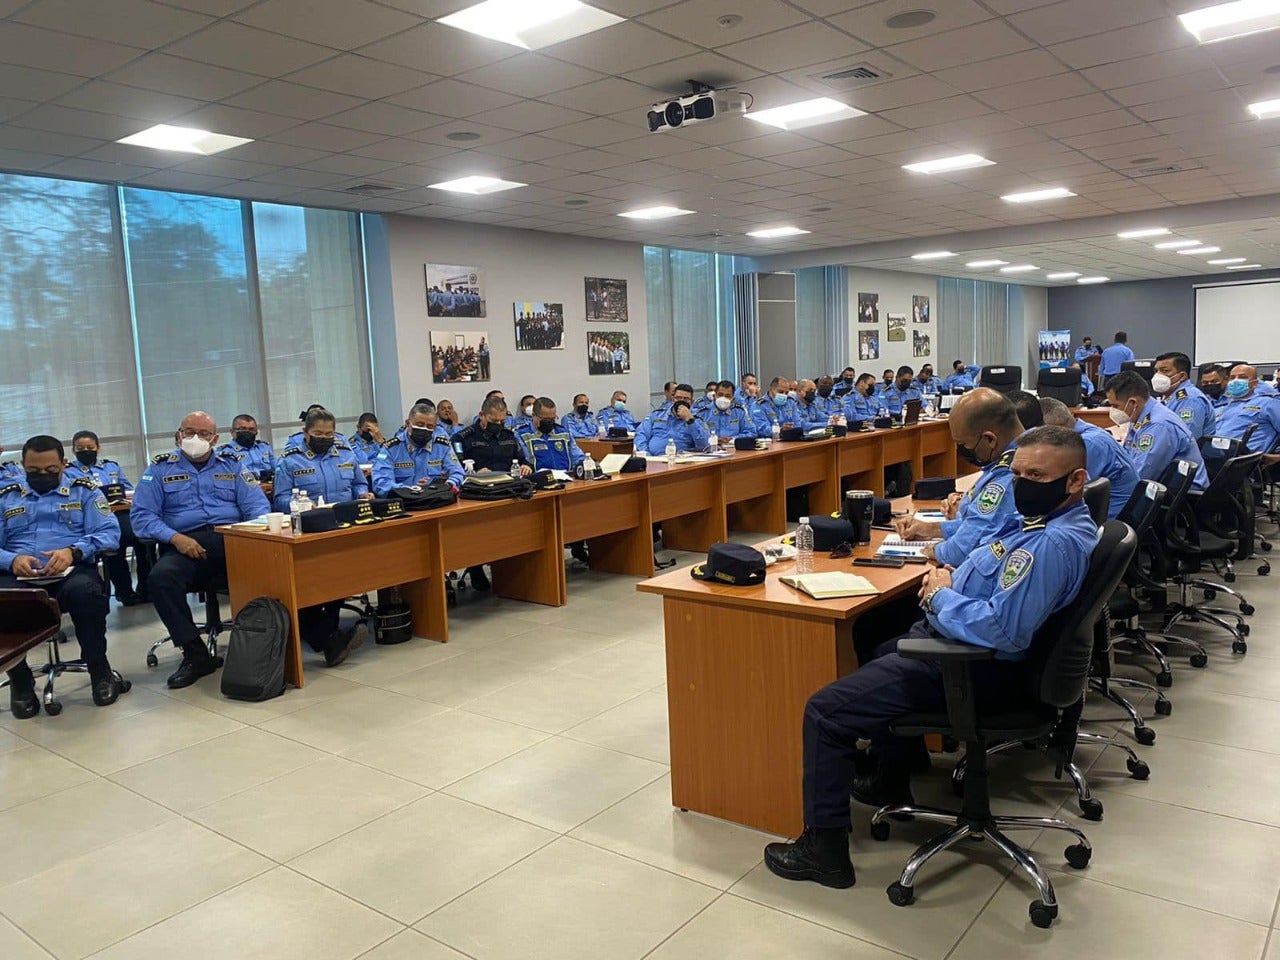 En la presentación estuvieron presentes miembros de la Policía Nacional de Honduras.